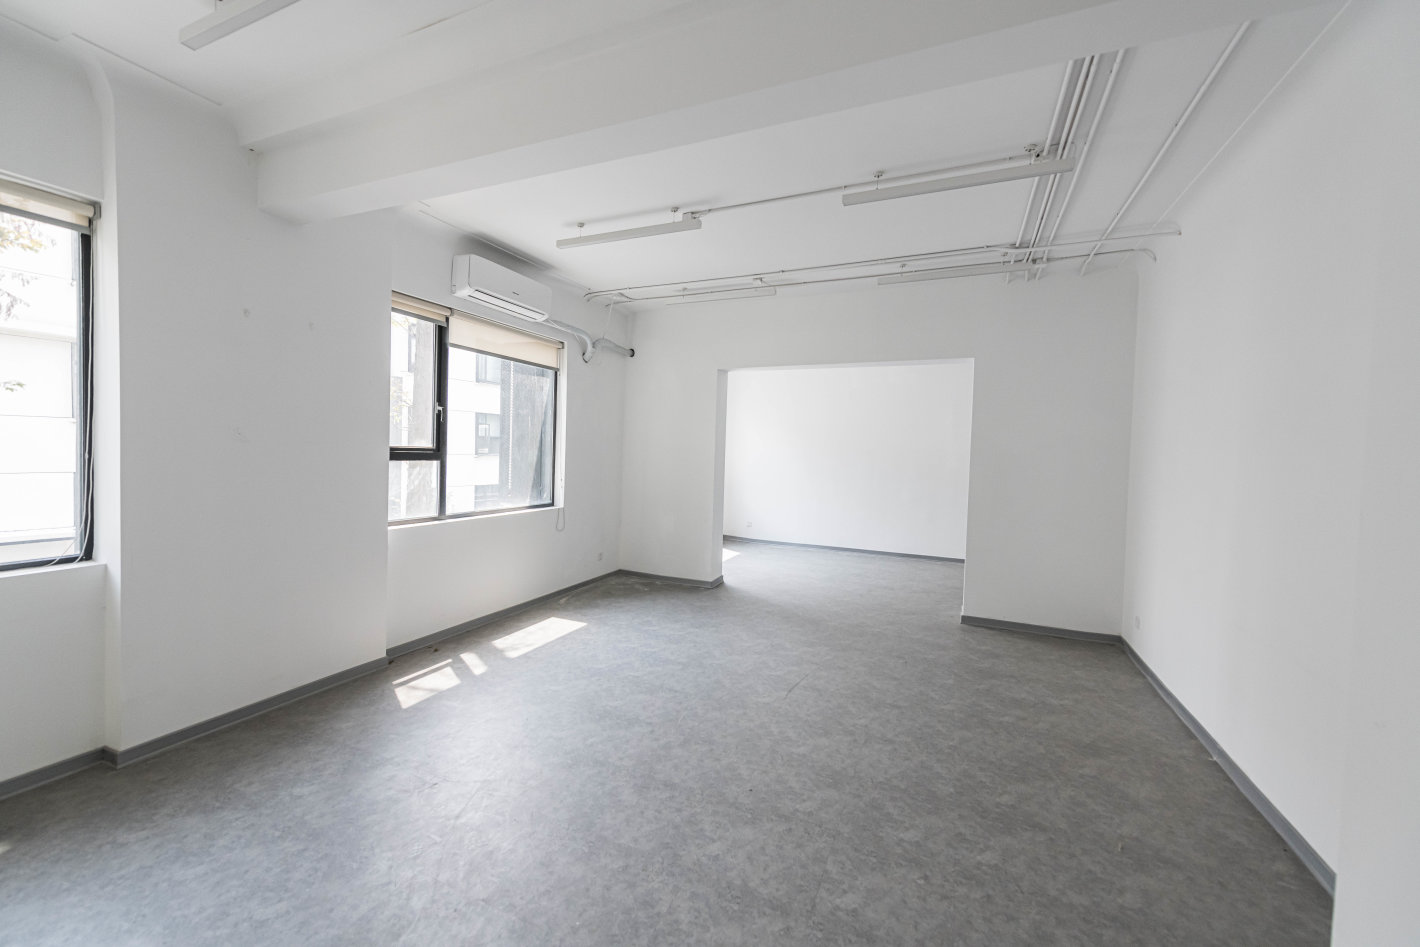 宏慧创意Lab235471平米办公室出租-租金价格6.00元/m²/天